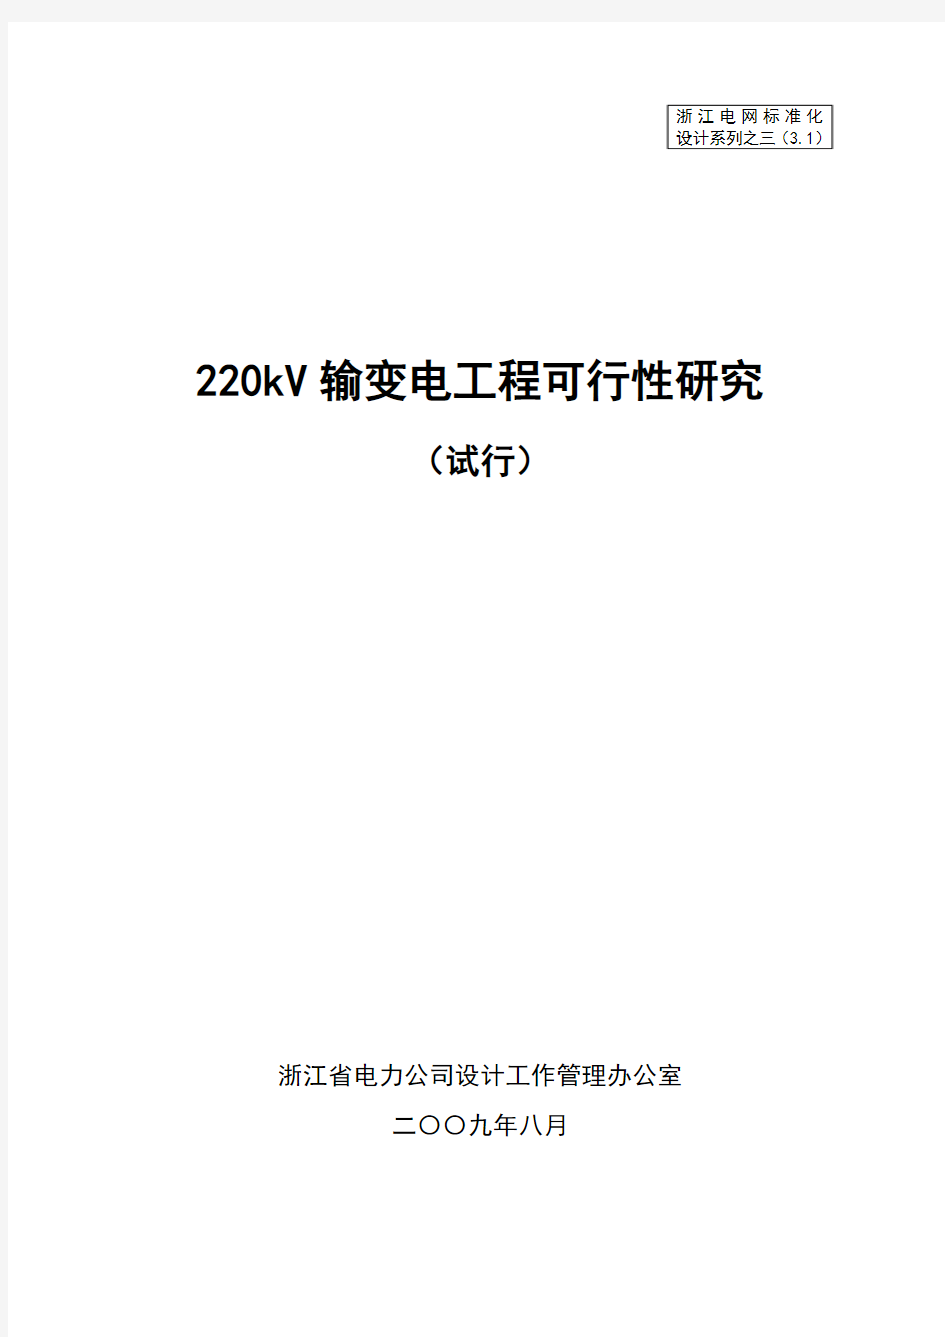 220kV输变电工程可行性研究标准化设计(试行)